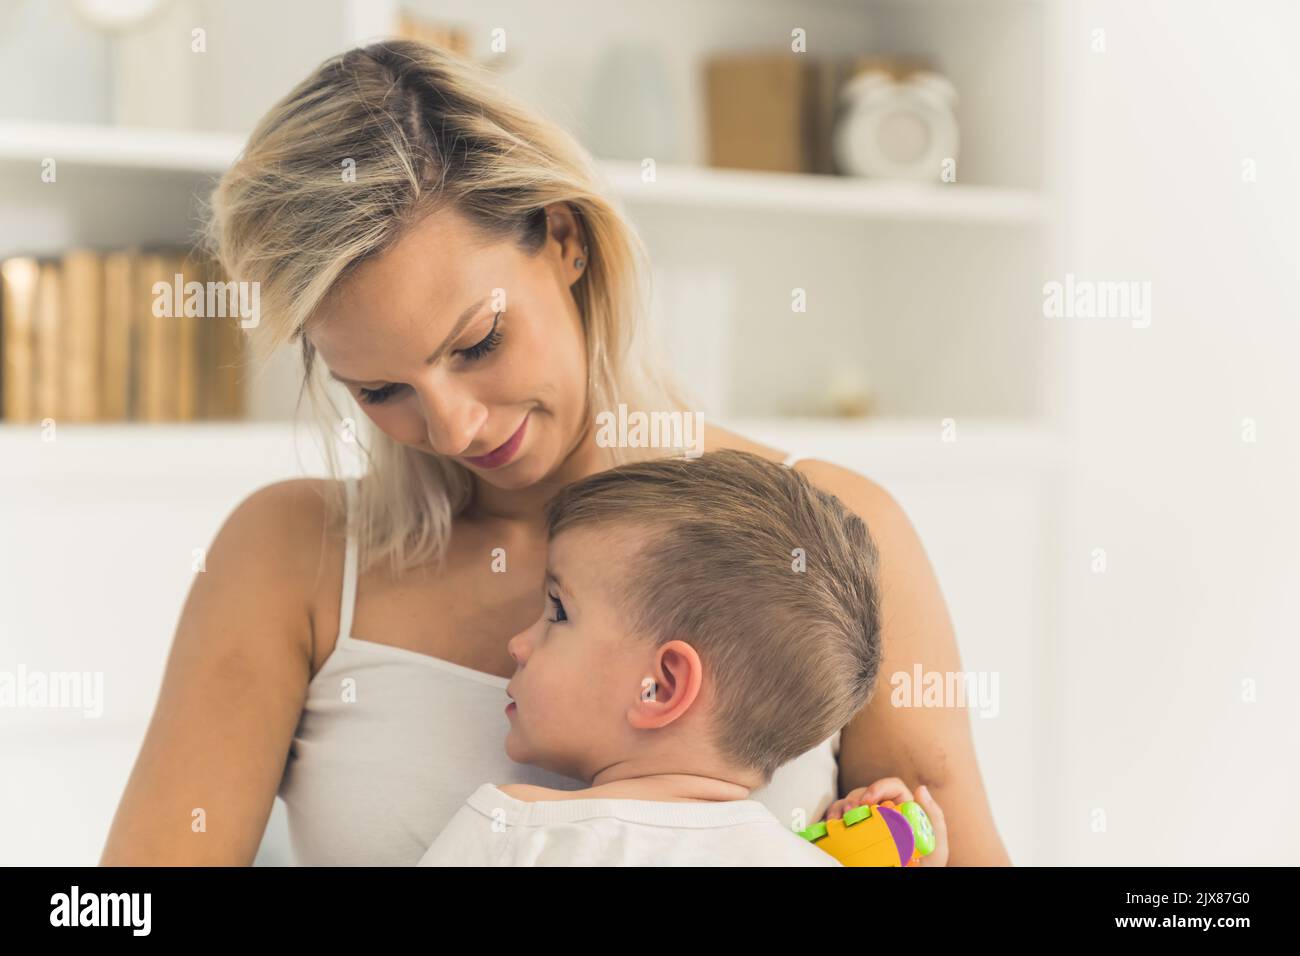 Nahaufnahme Porträt präsentiert wirklich schöne Bindung zwischen Eltern und kleinen Kind. Kaukasischer braunhaariger Kleinkind, der auf dem Schoß seiner Mutter sitzt. Stolze glückliche Mutter im weißen Tank Top, die ihr Kind ansieht. Hochwertige Fotos Stockfoto